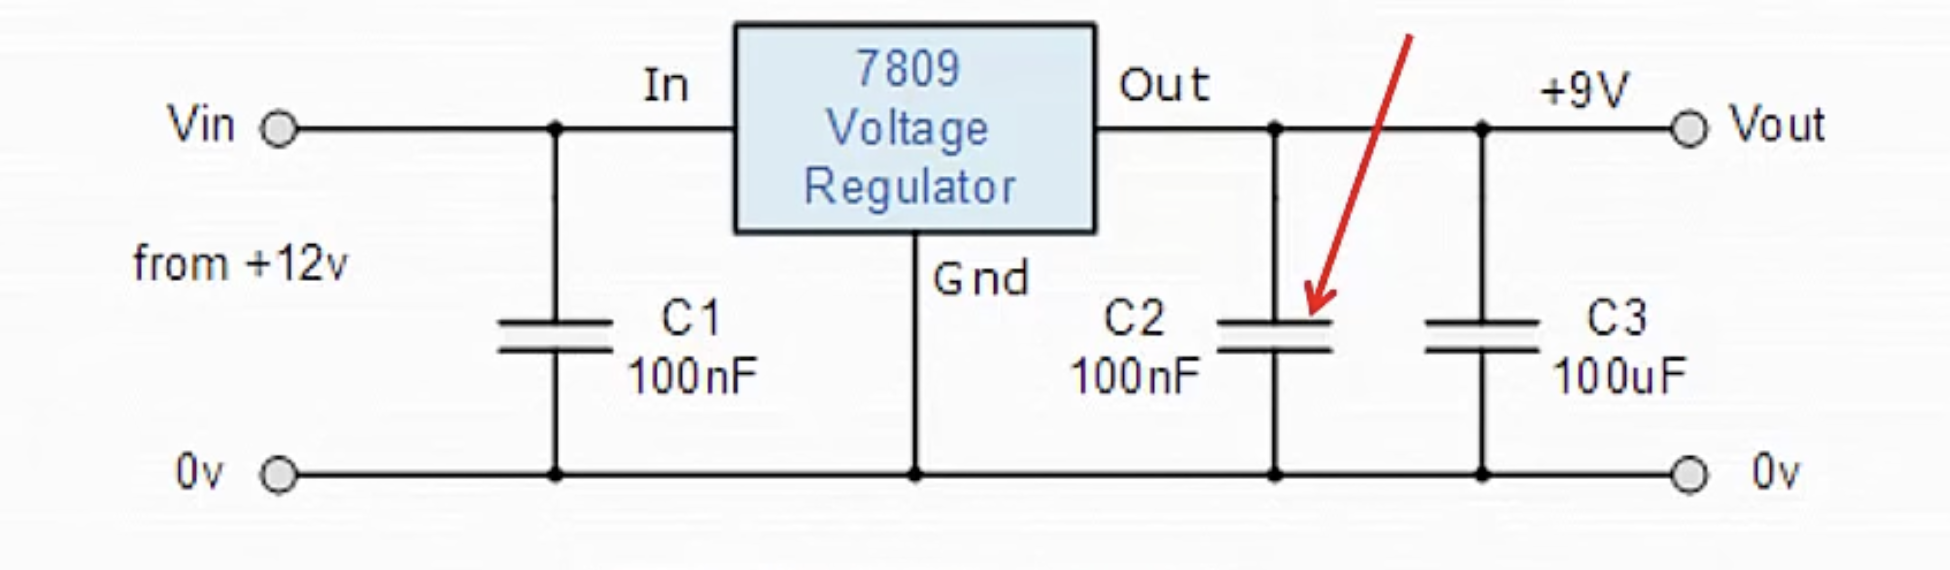 Voltage Regulator Main Circuit